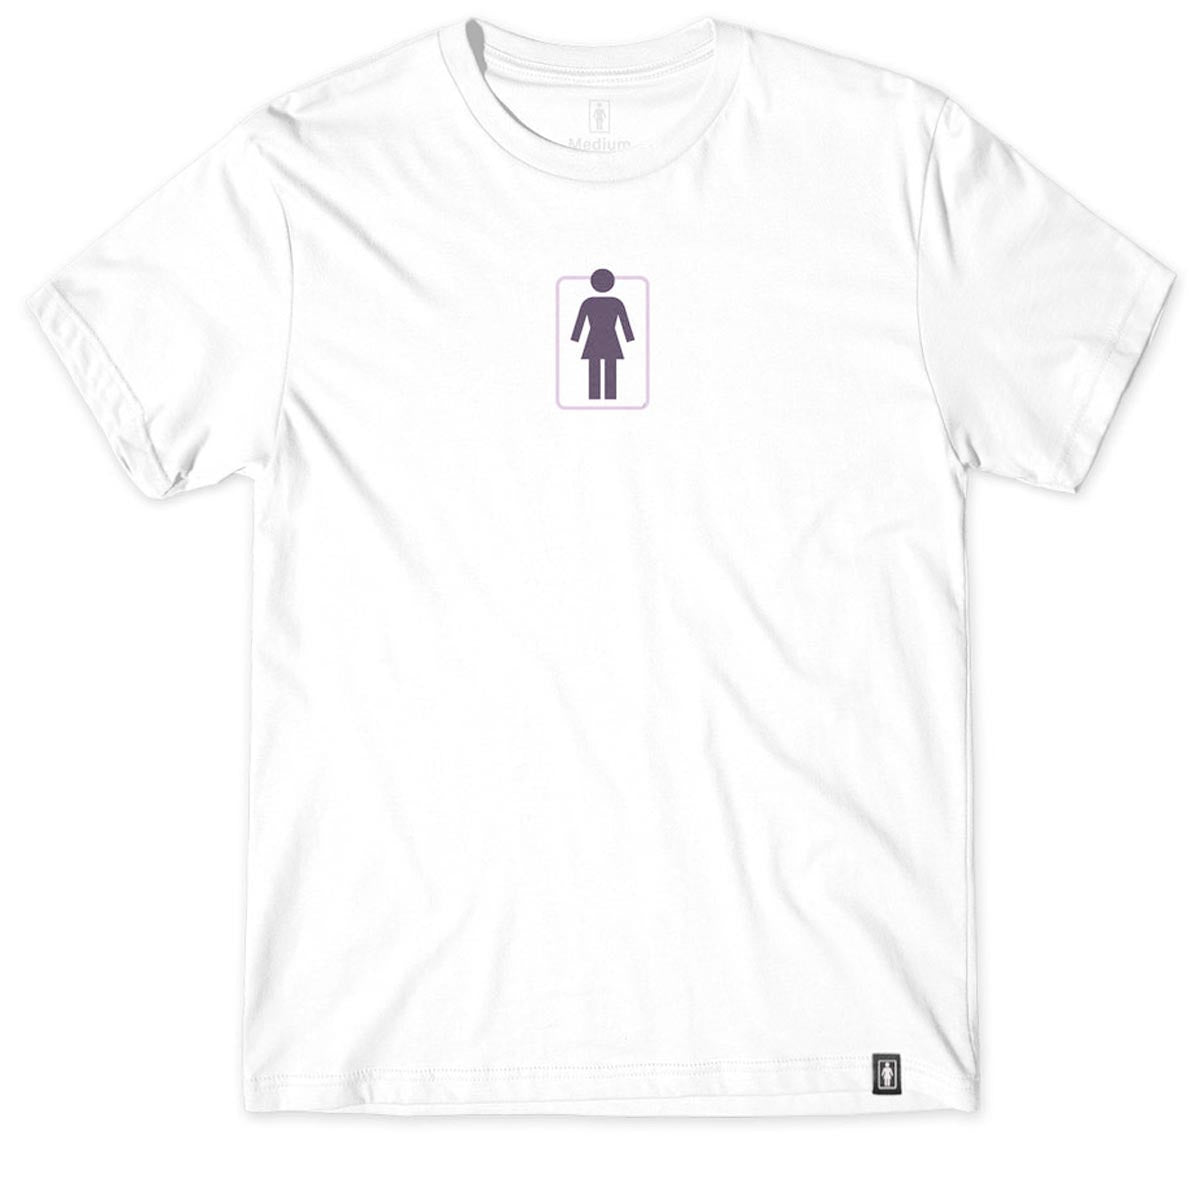 Girl Unboxed OG T-Shirt - White/White image 1